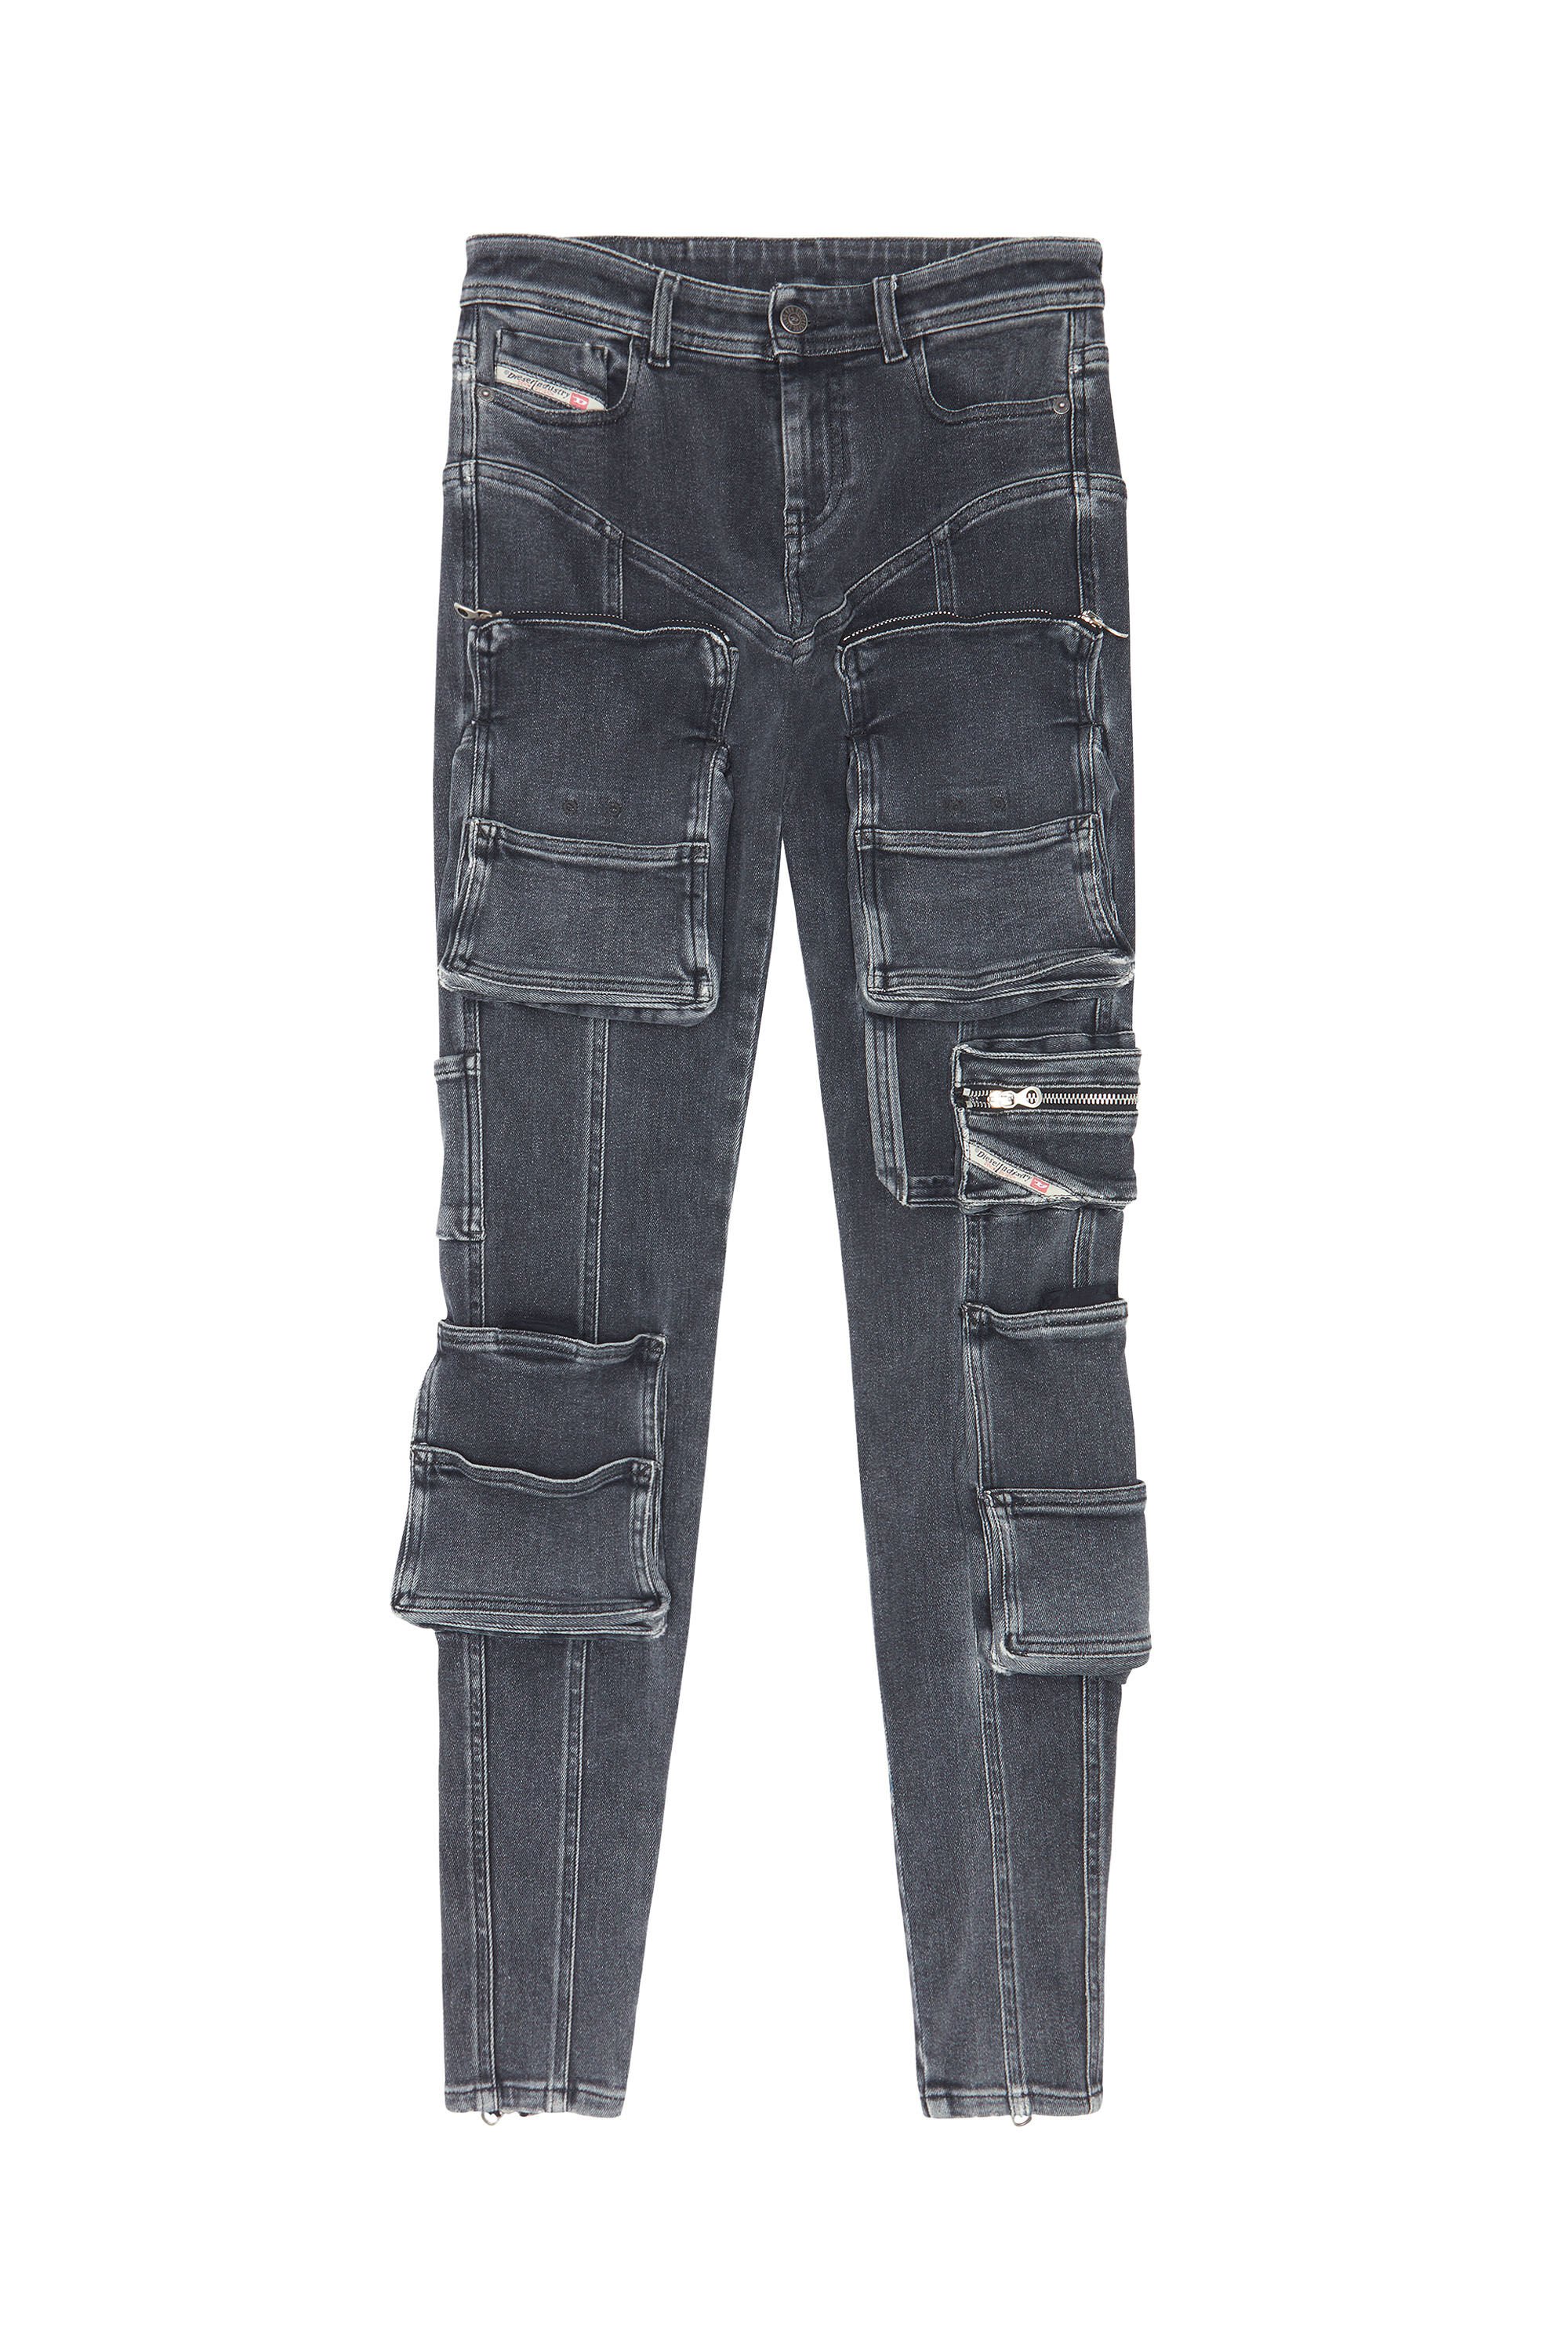 Diesel - Woman Super skinny Jeans 1984 Slandy-High 09F27, Black/Dark grey - Image 2